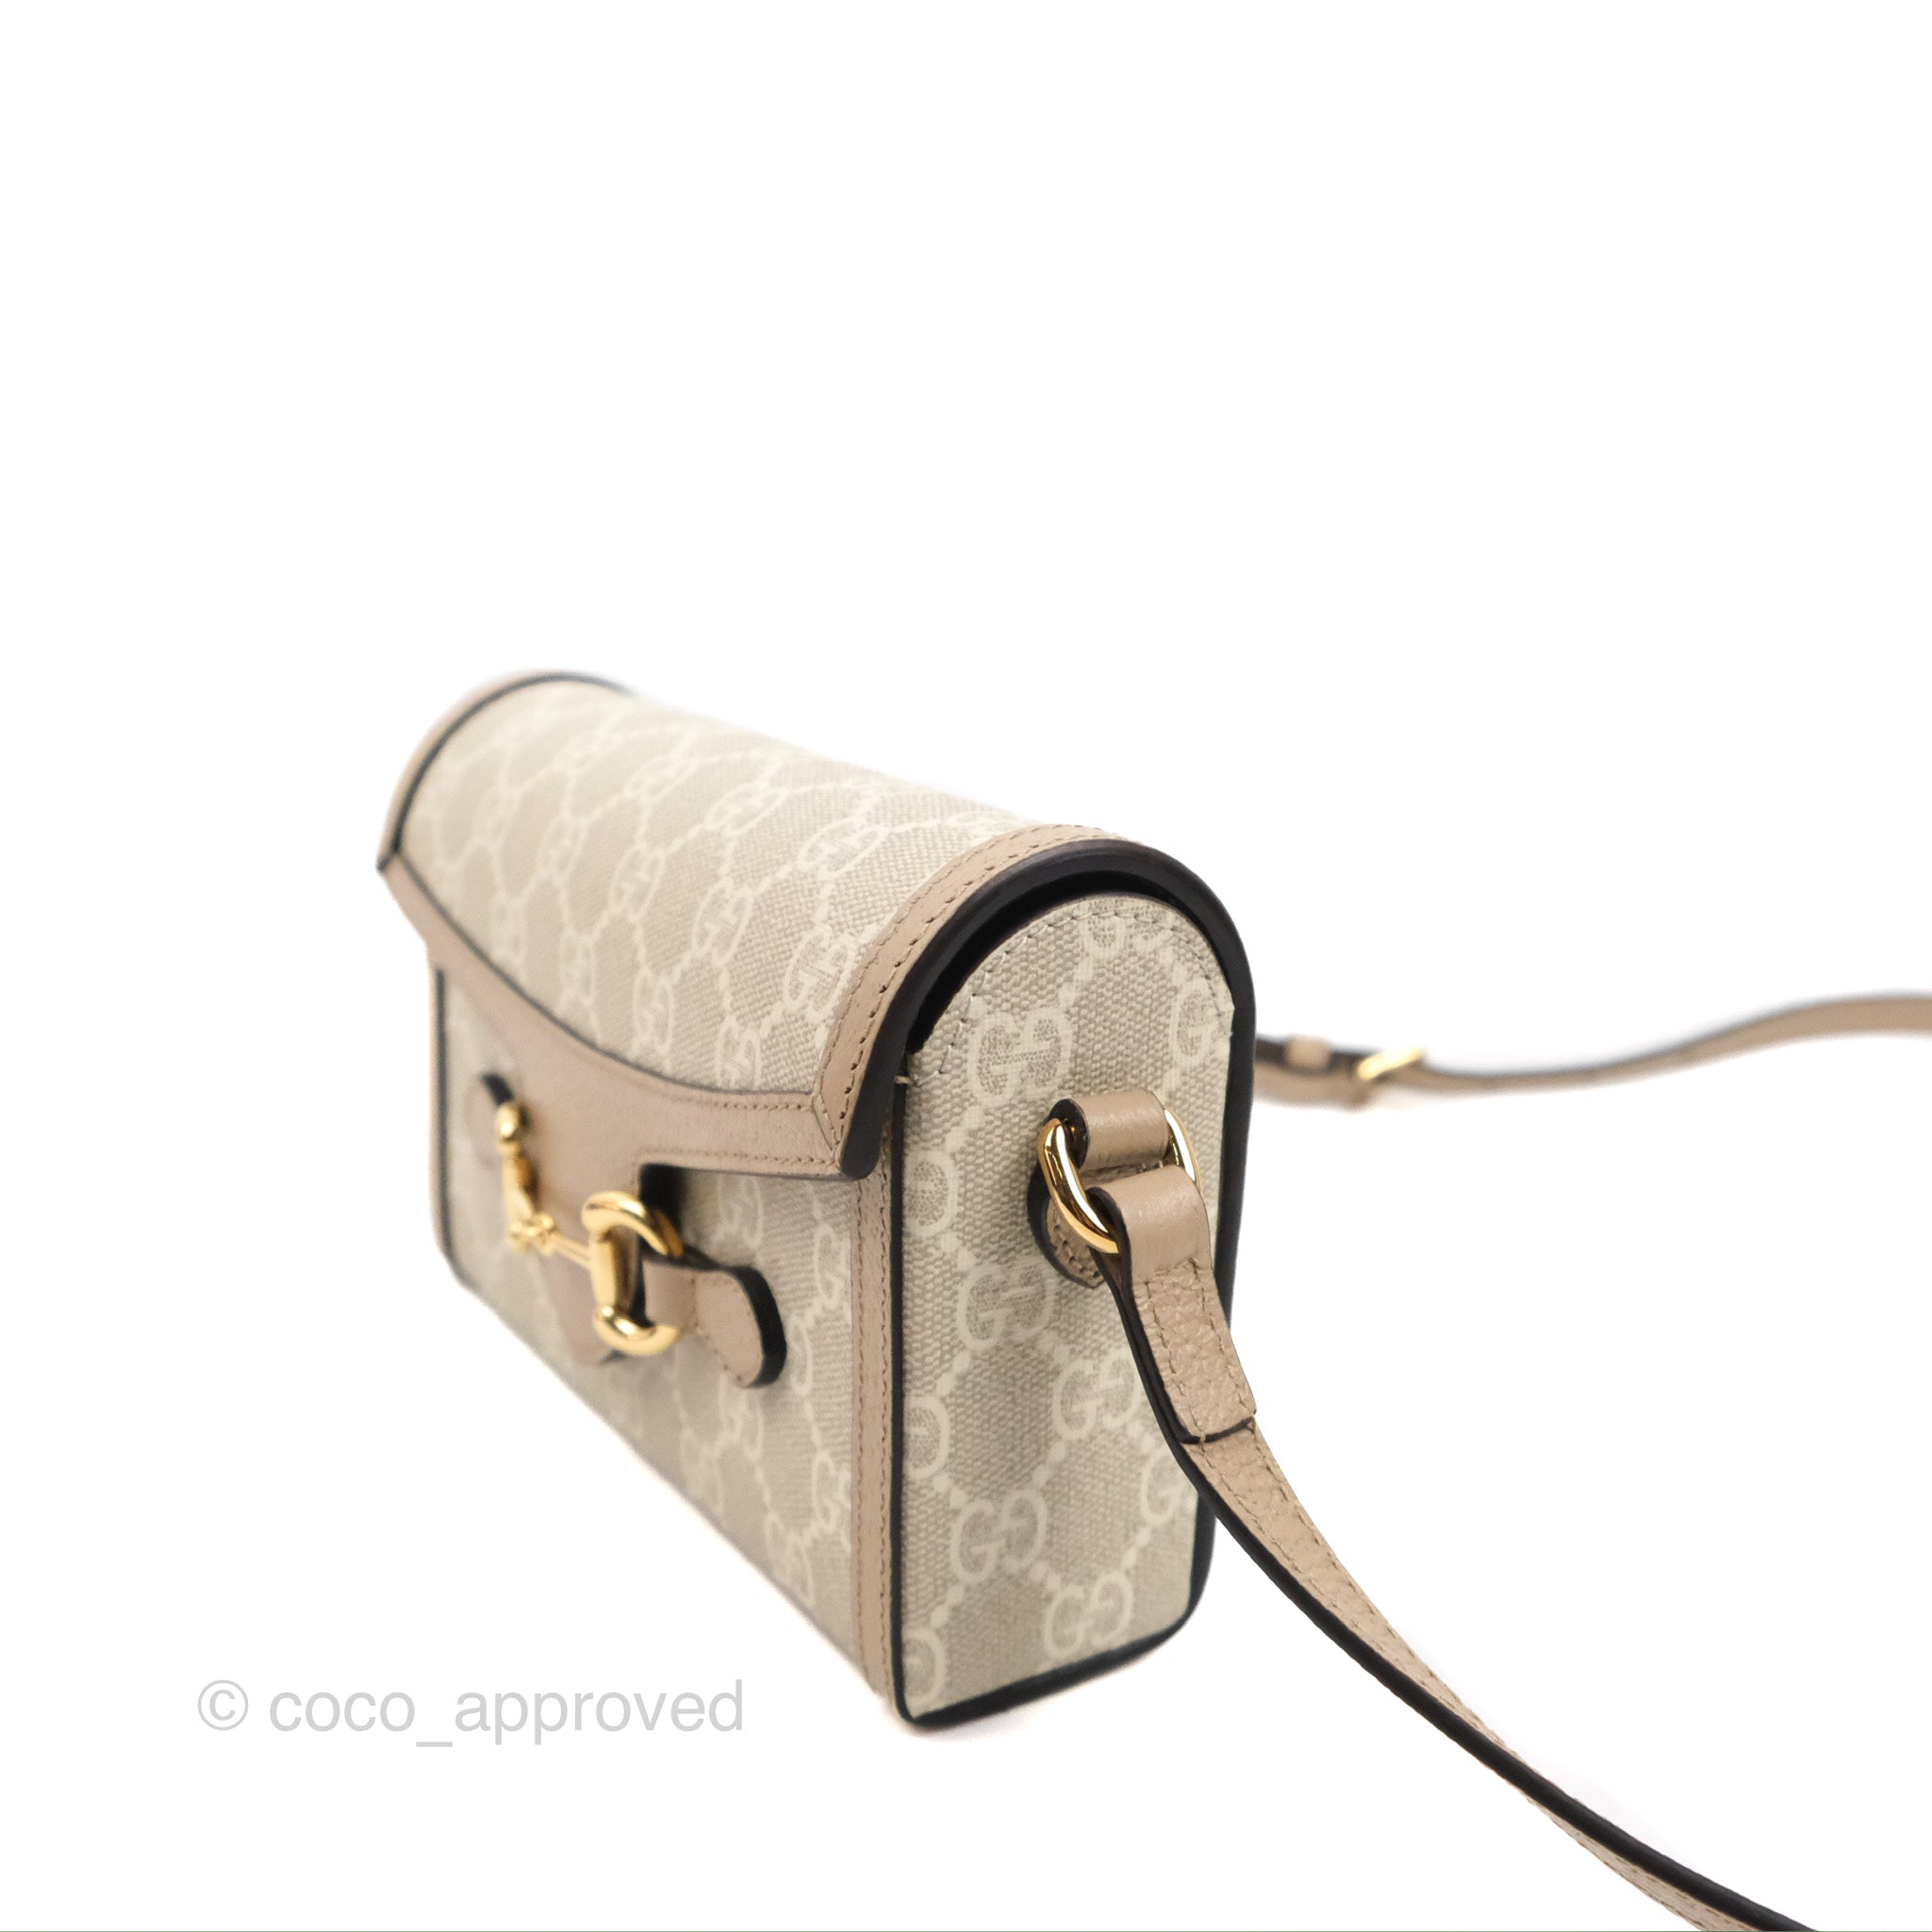 Gucci Horsebit 1955 mini bag in beige and white GG Supreme